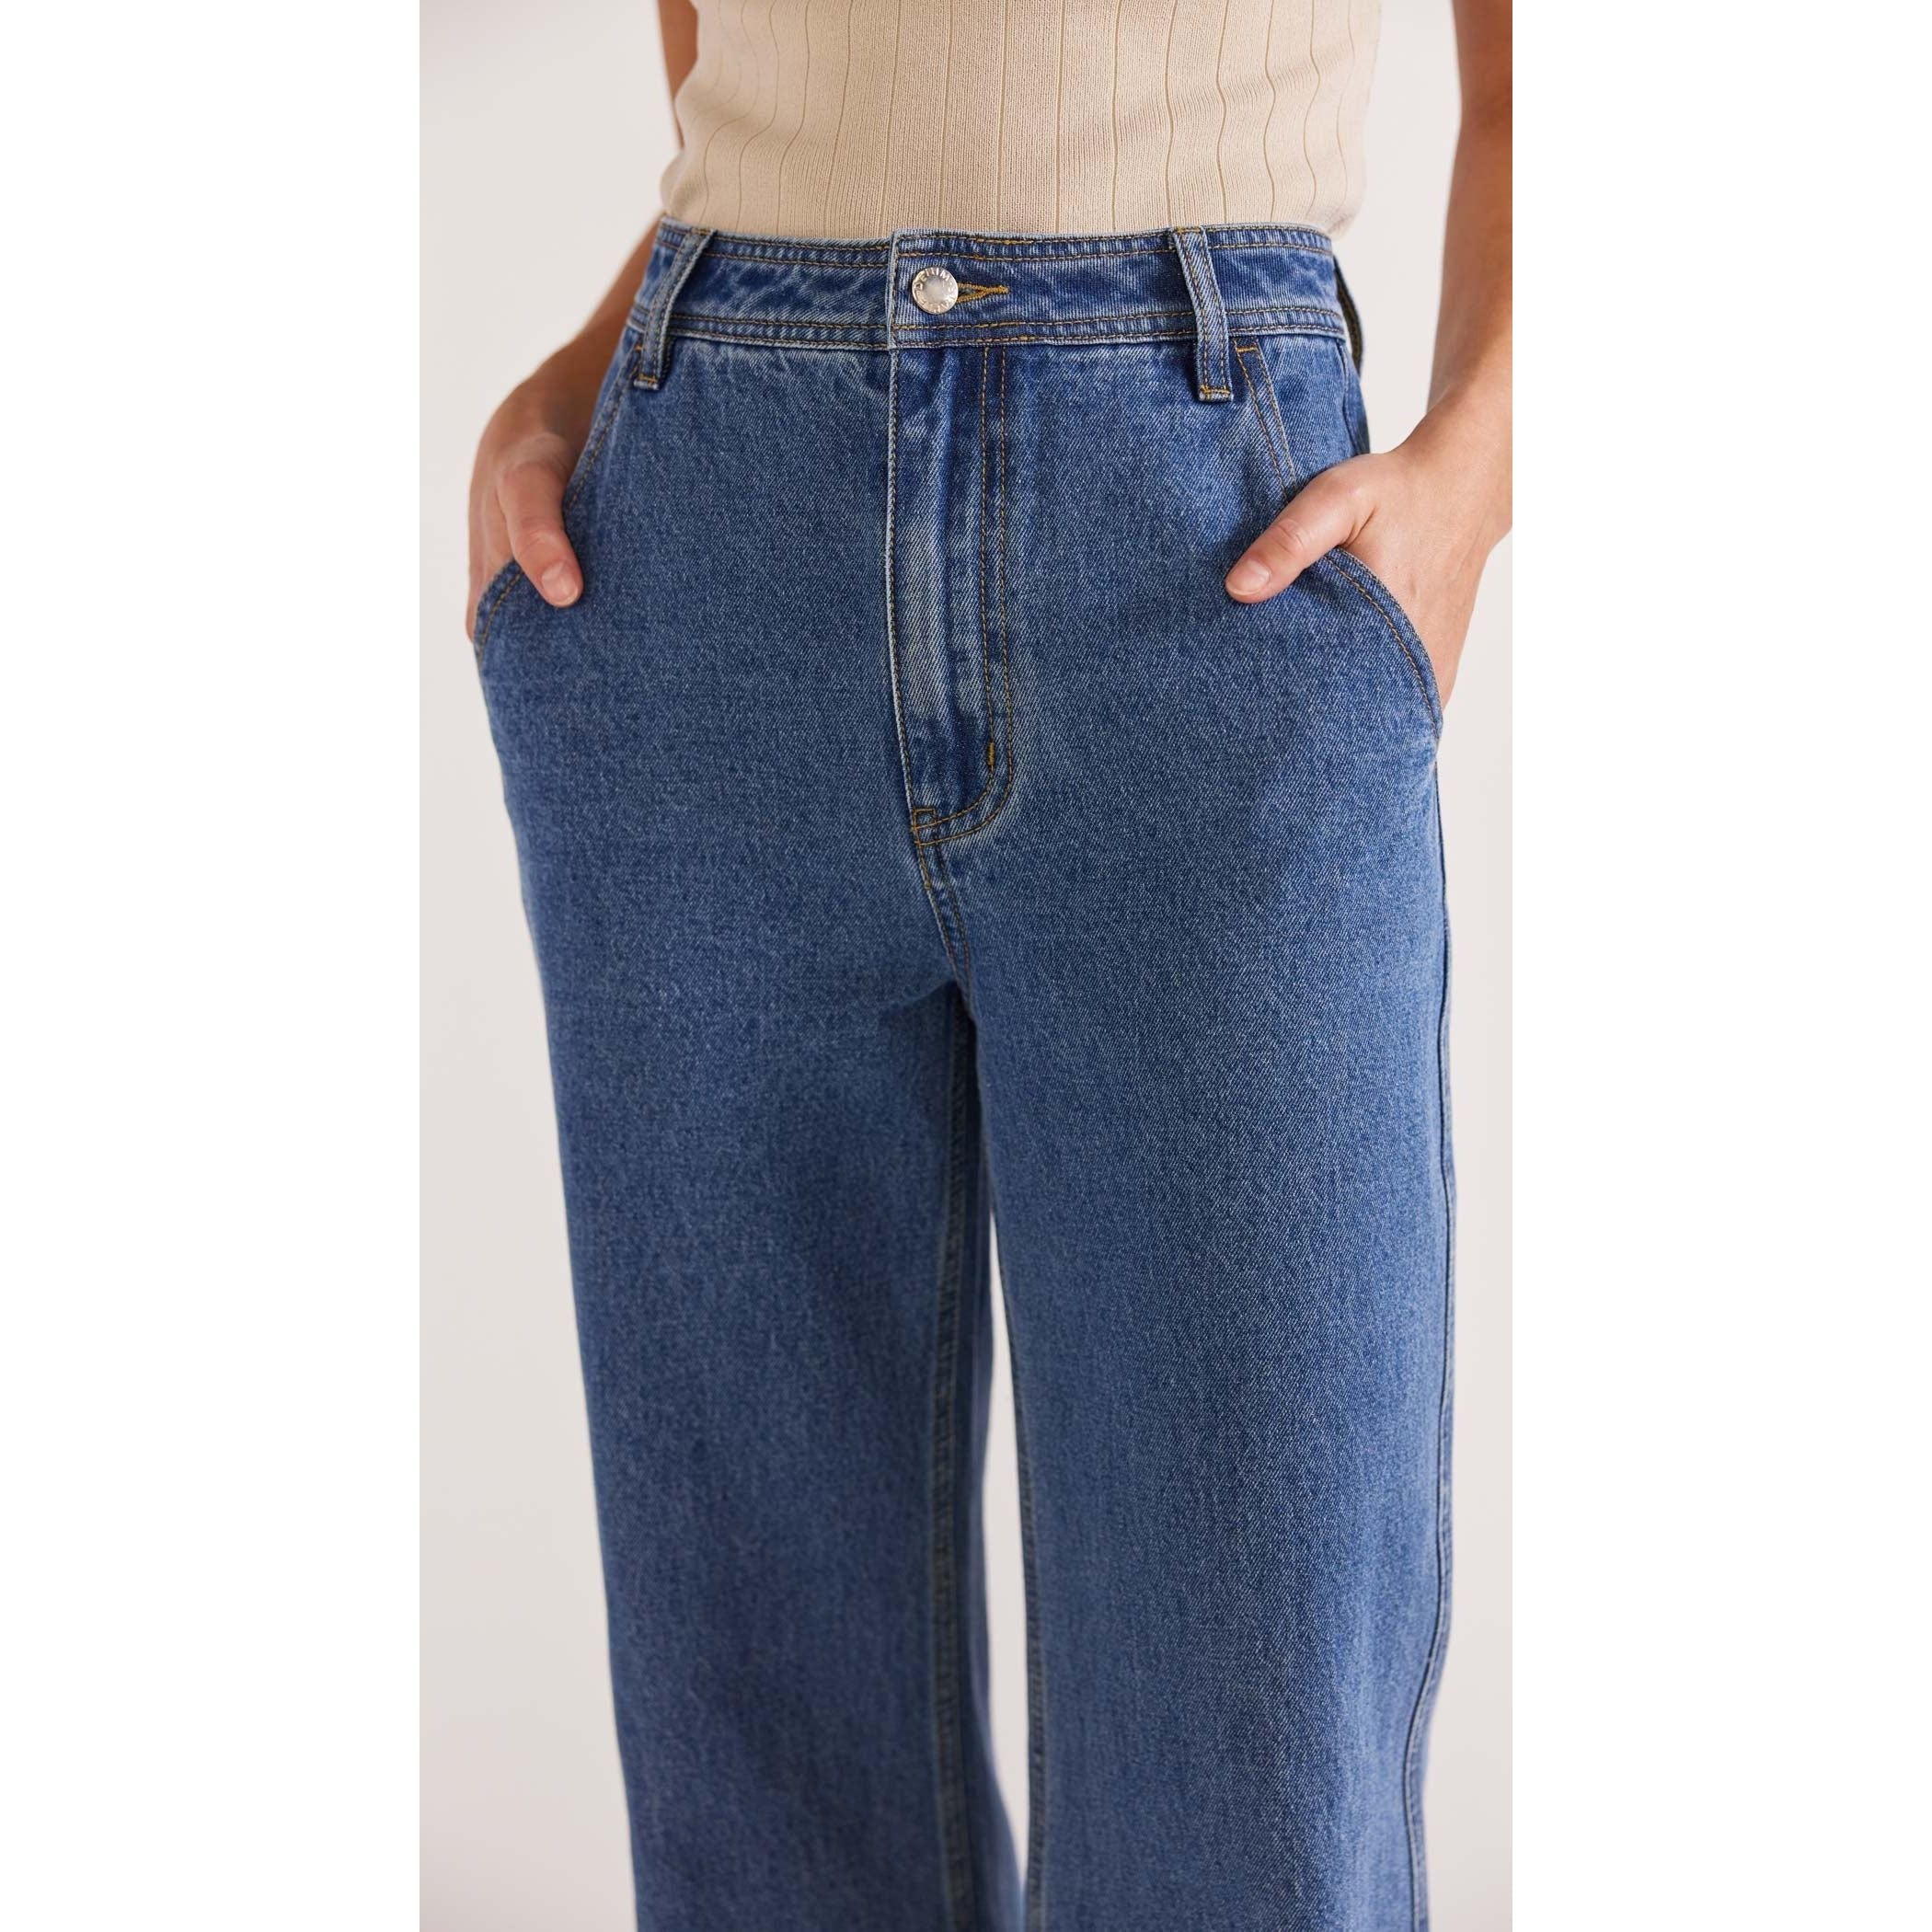 Eva-Denim-Jeans-Staple-the-Label-5_5000x_da3d7436-f735-45ca-a26e-2a88533d18aa.jpg